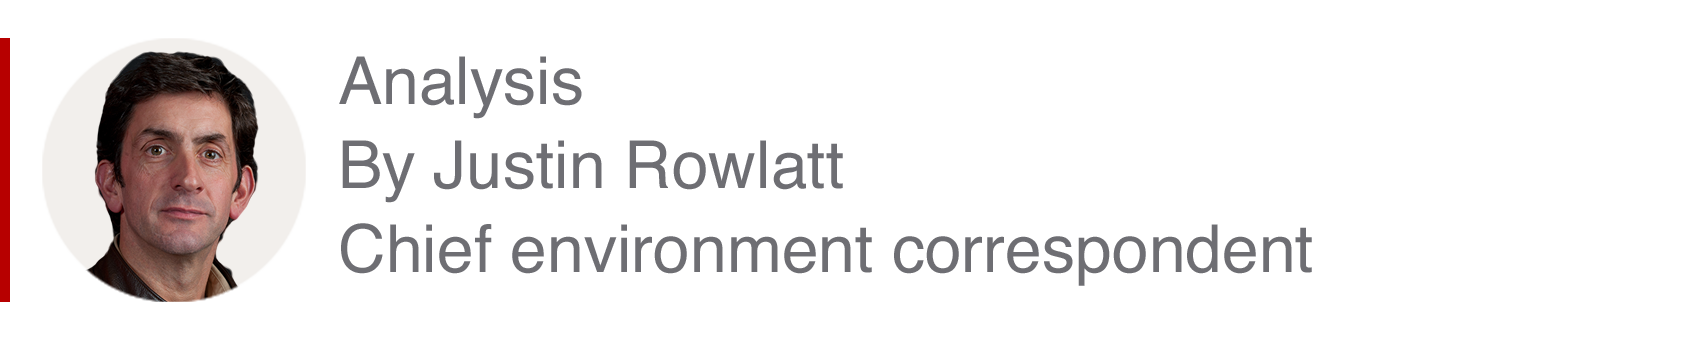 Analysis box by Justin Rowlatt, chief environment correspondent